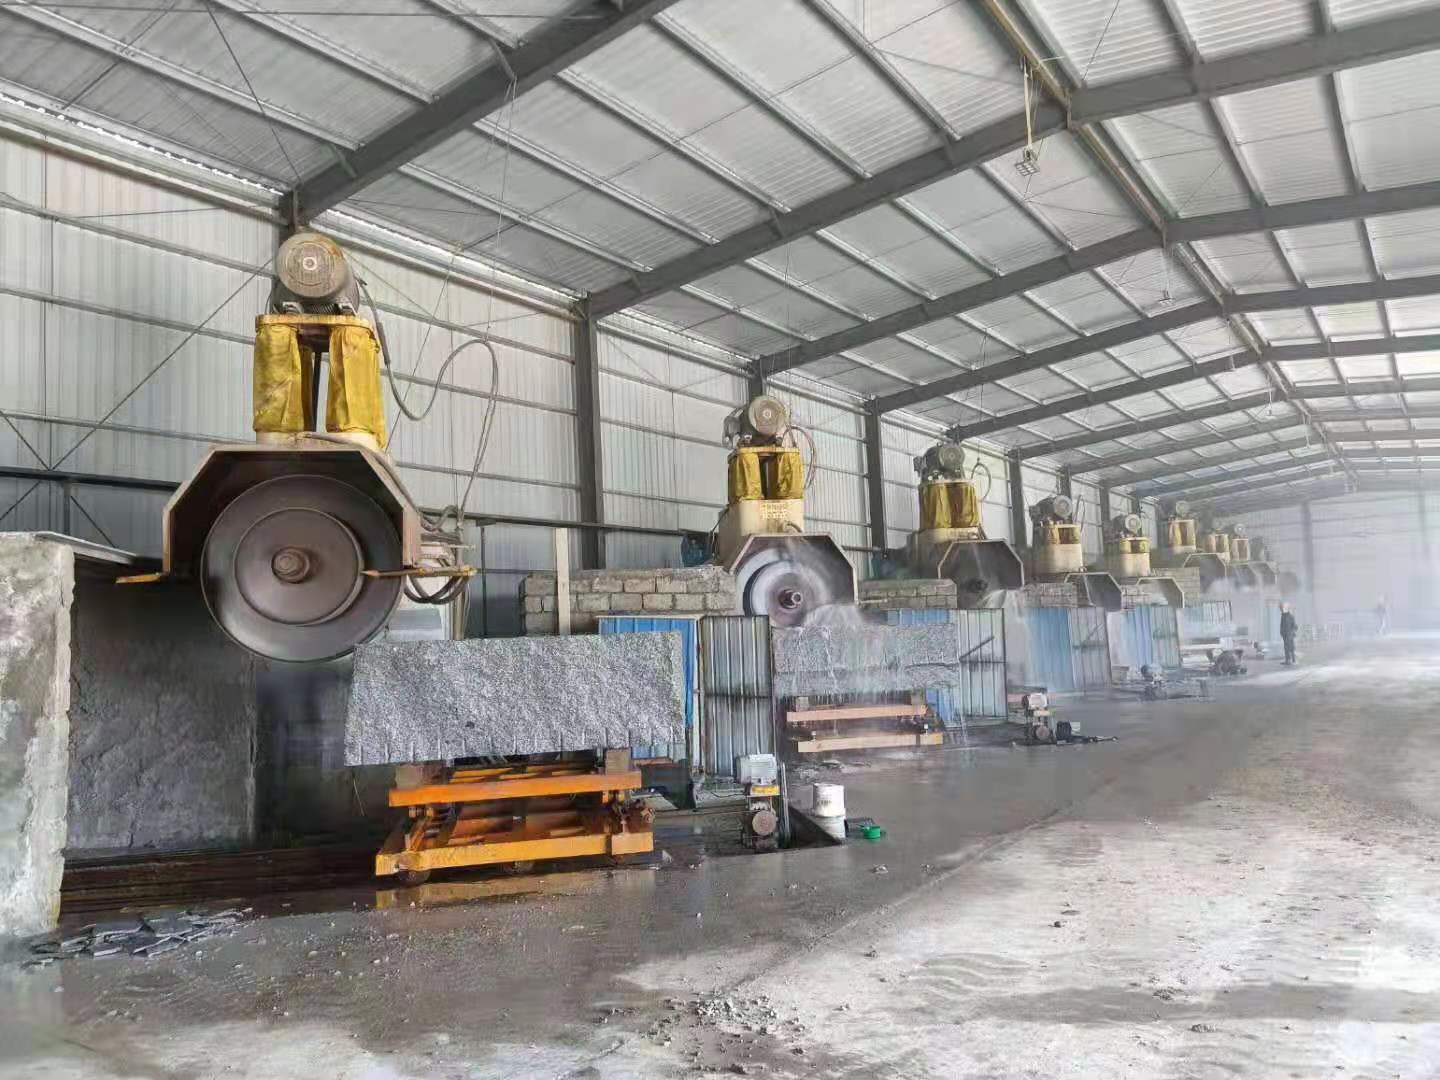 Granite Bridge block cutting machine Multi blade Stone Cuitting Machine HLQY-2500 HuaLong Machinery